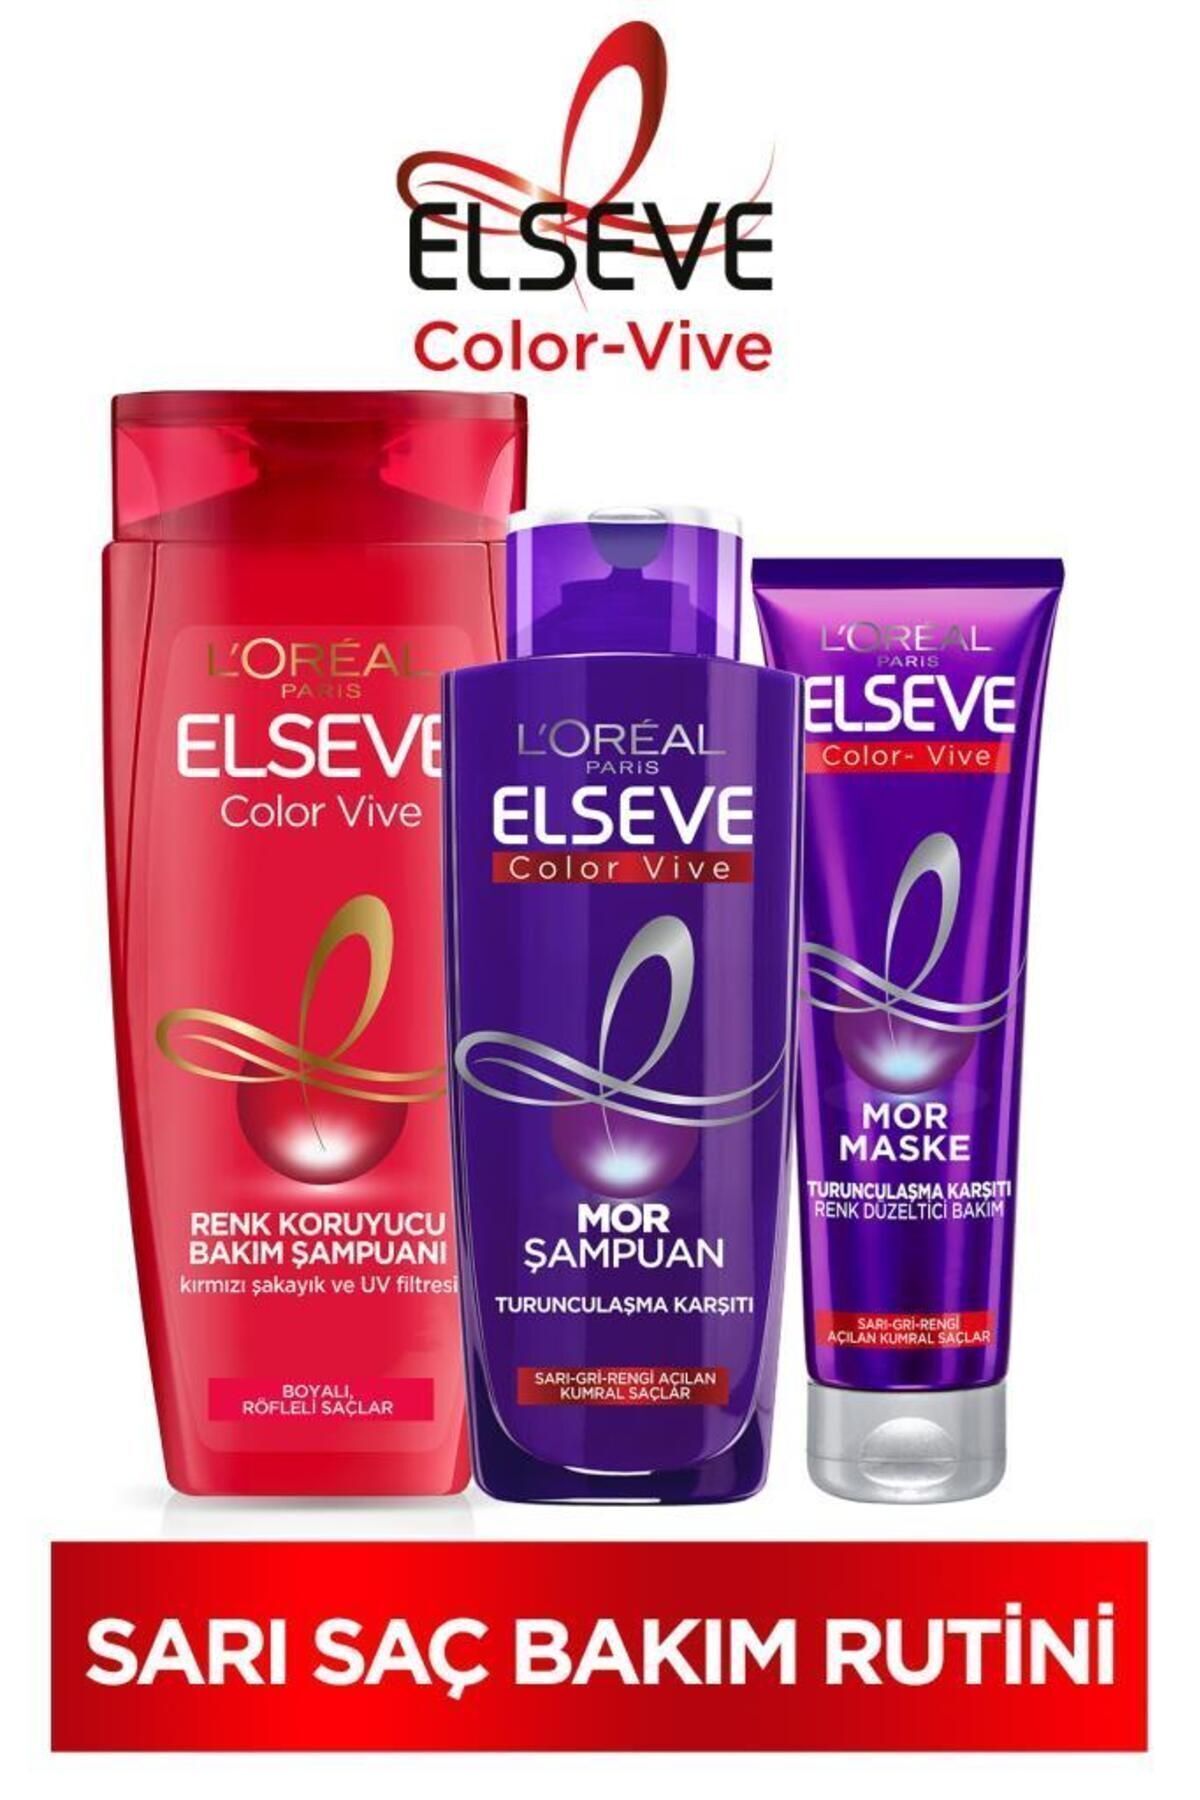 Elseve Renk Koruyucu Bakım Şampua C48:c64n 450ml & Turunculaştırma Karşıtı Mor Şampuan & Mor Maske